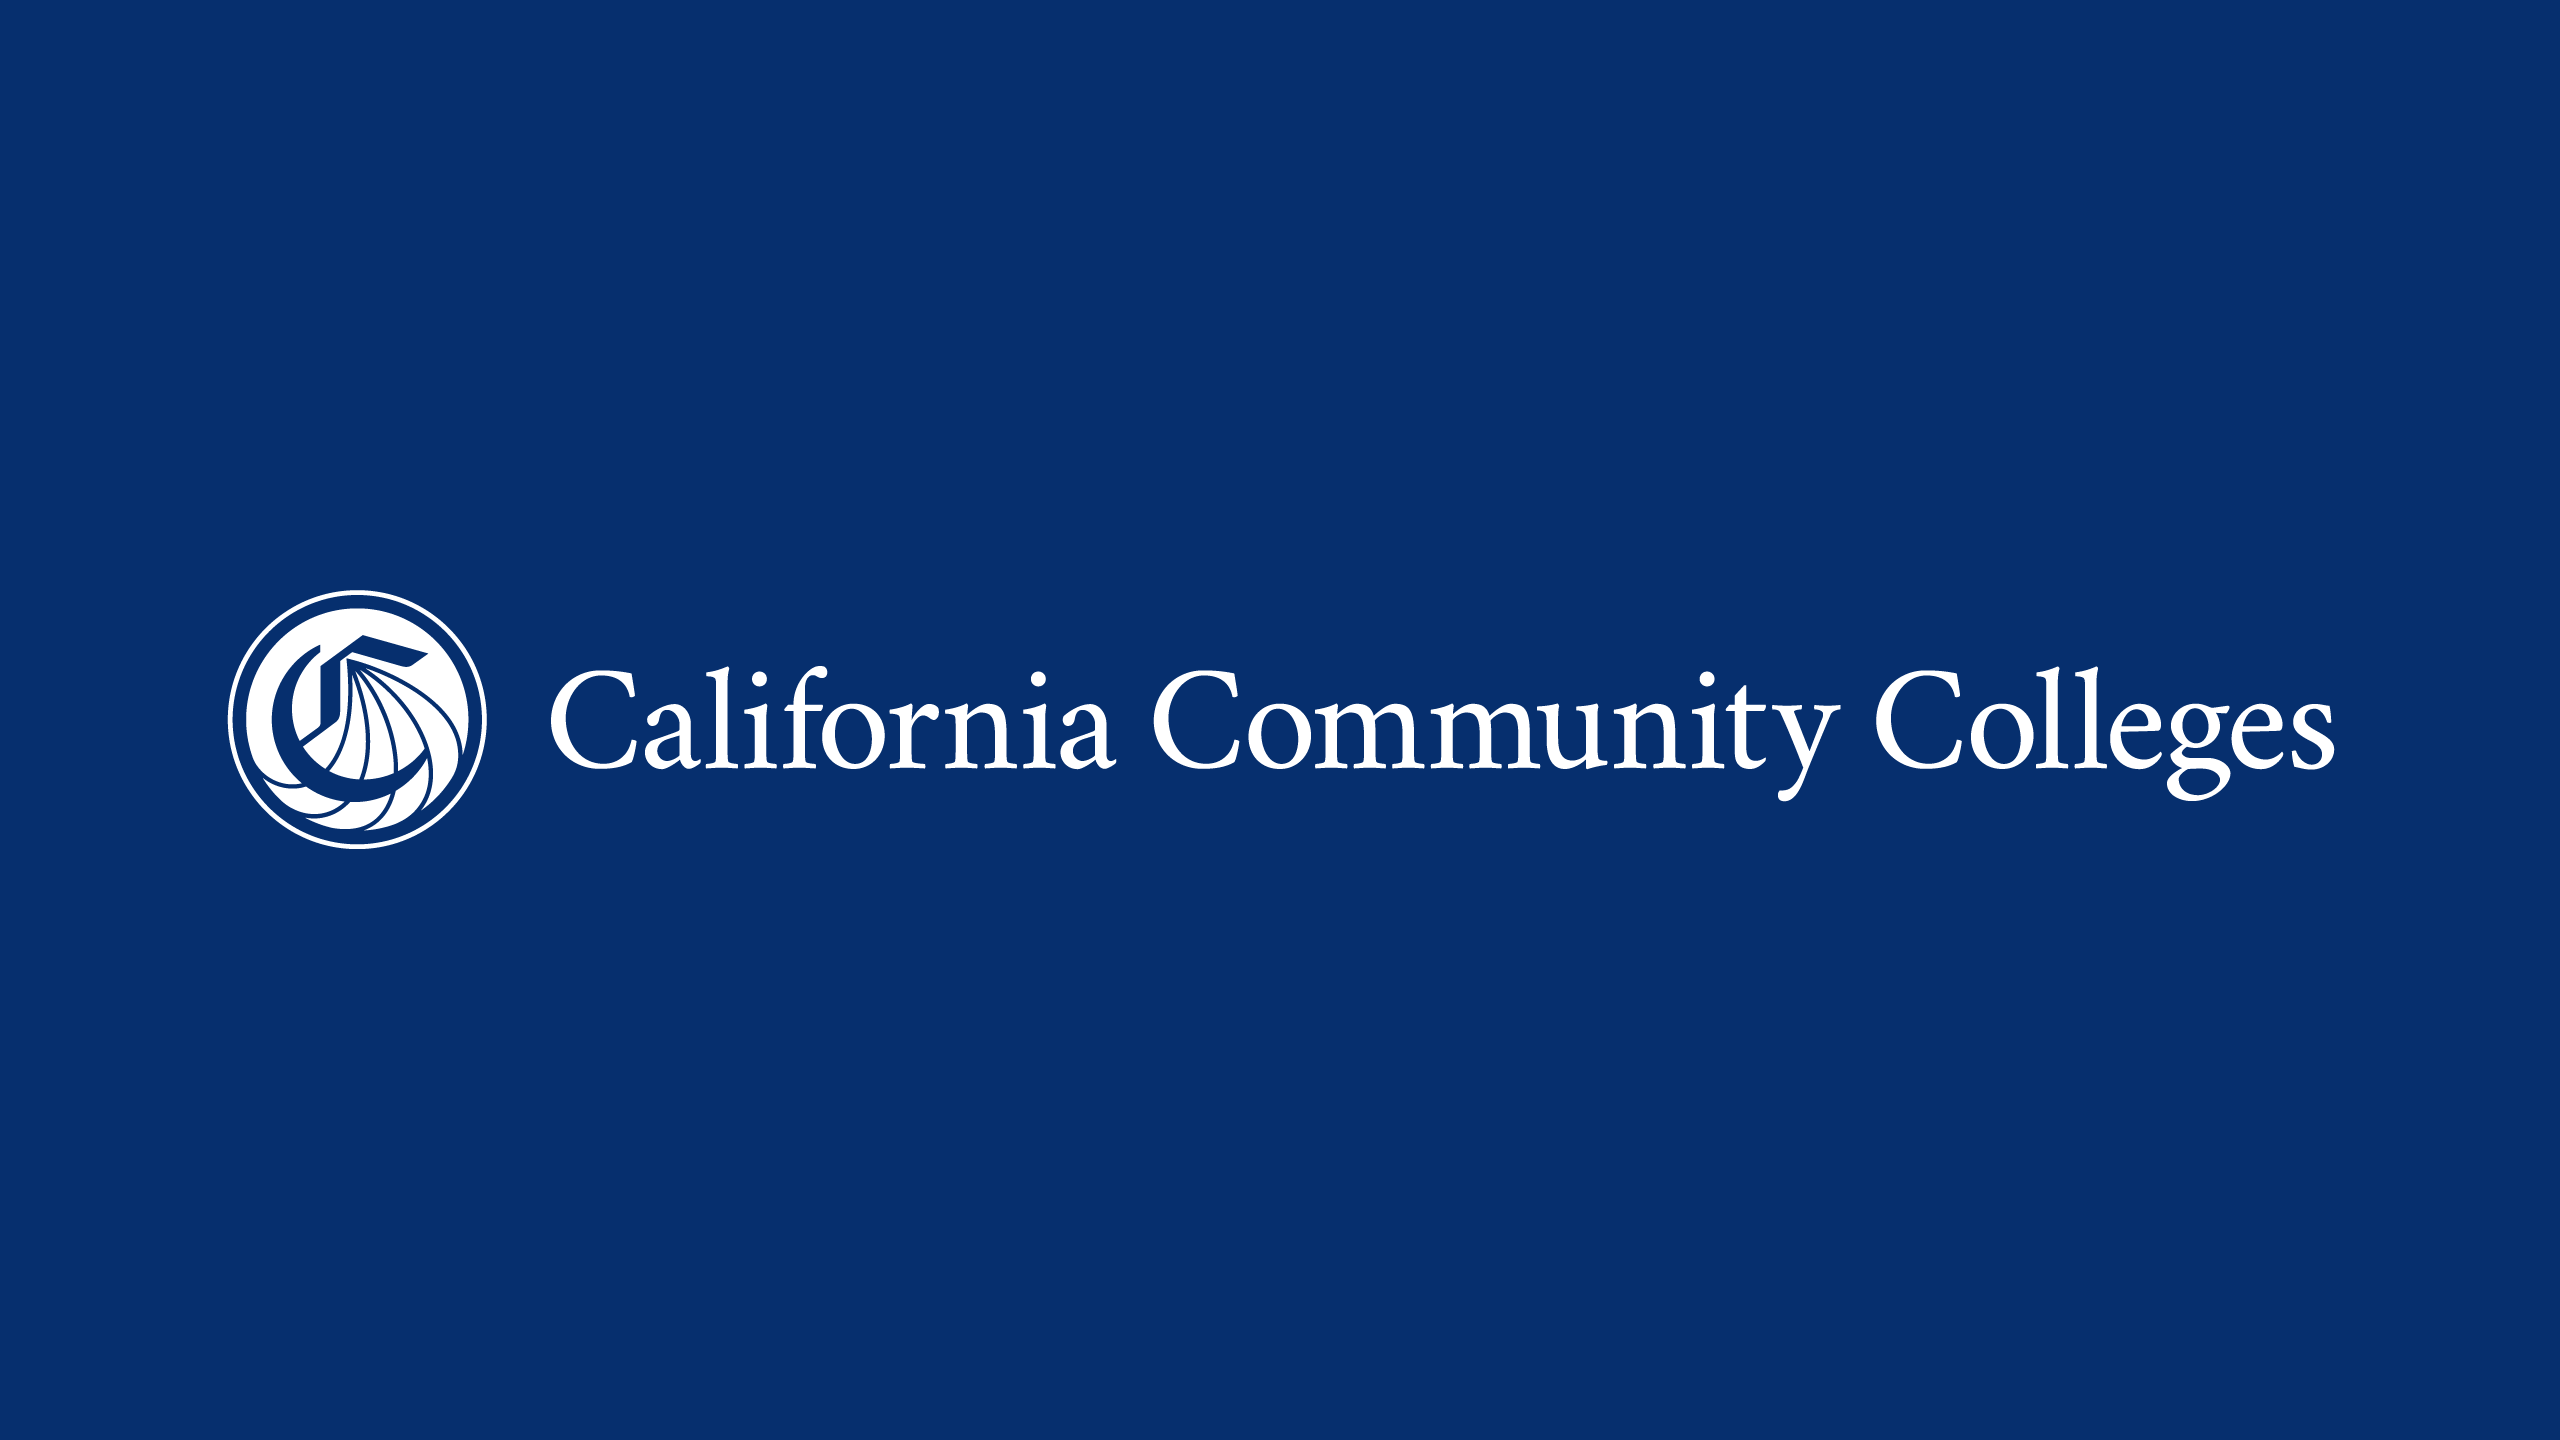 California Community Colleges • John Pastor